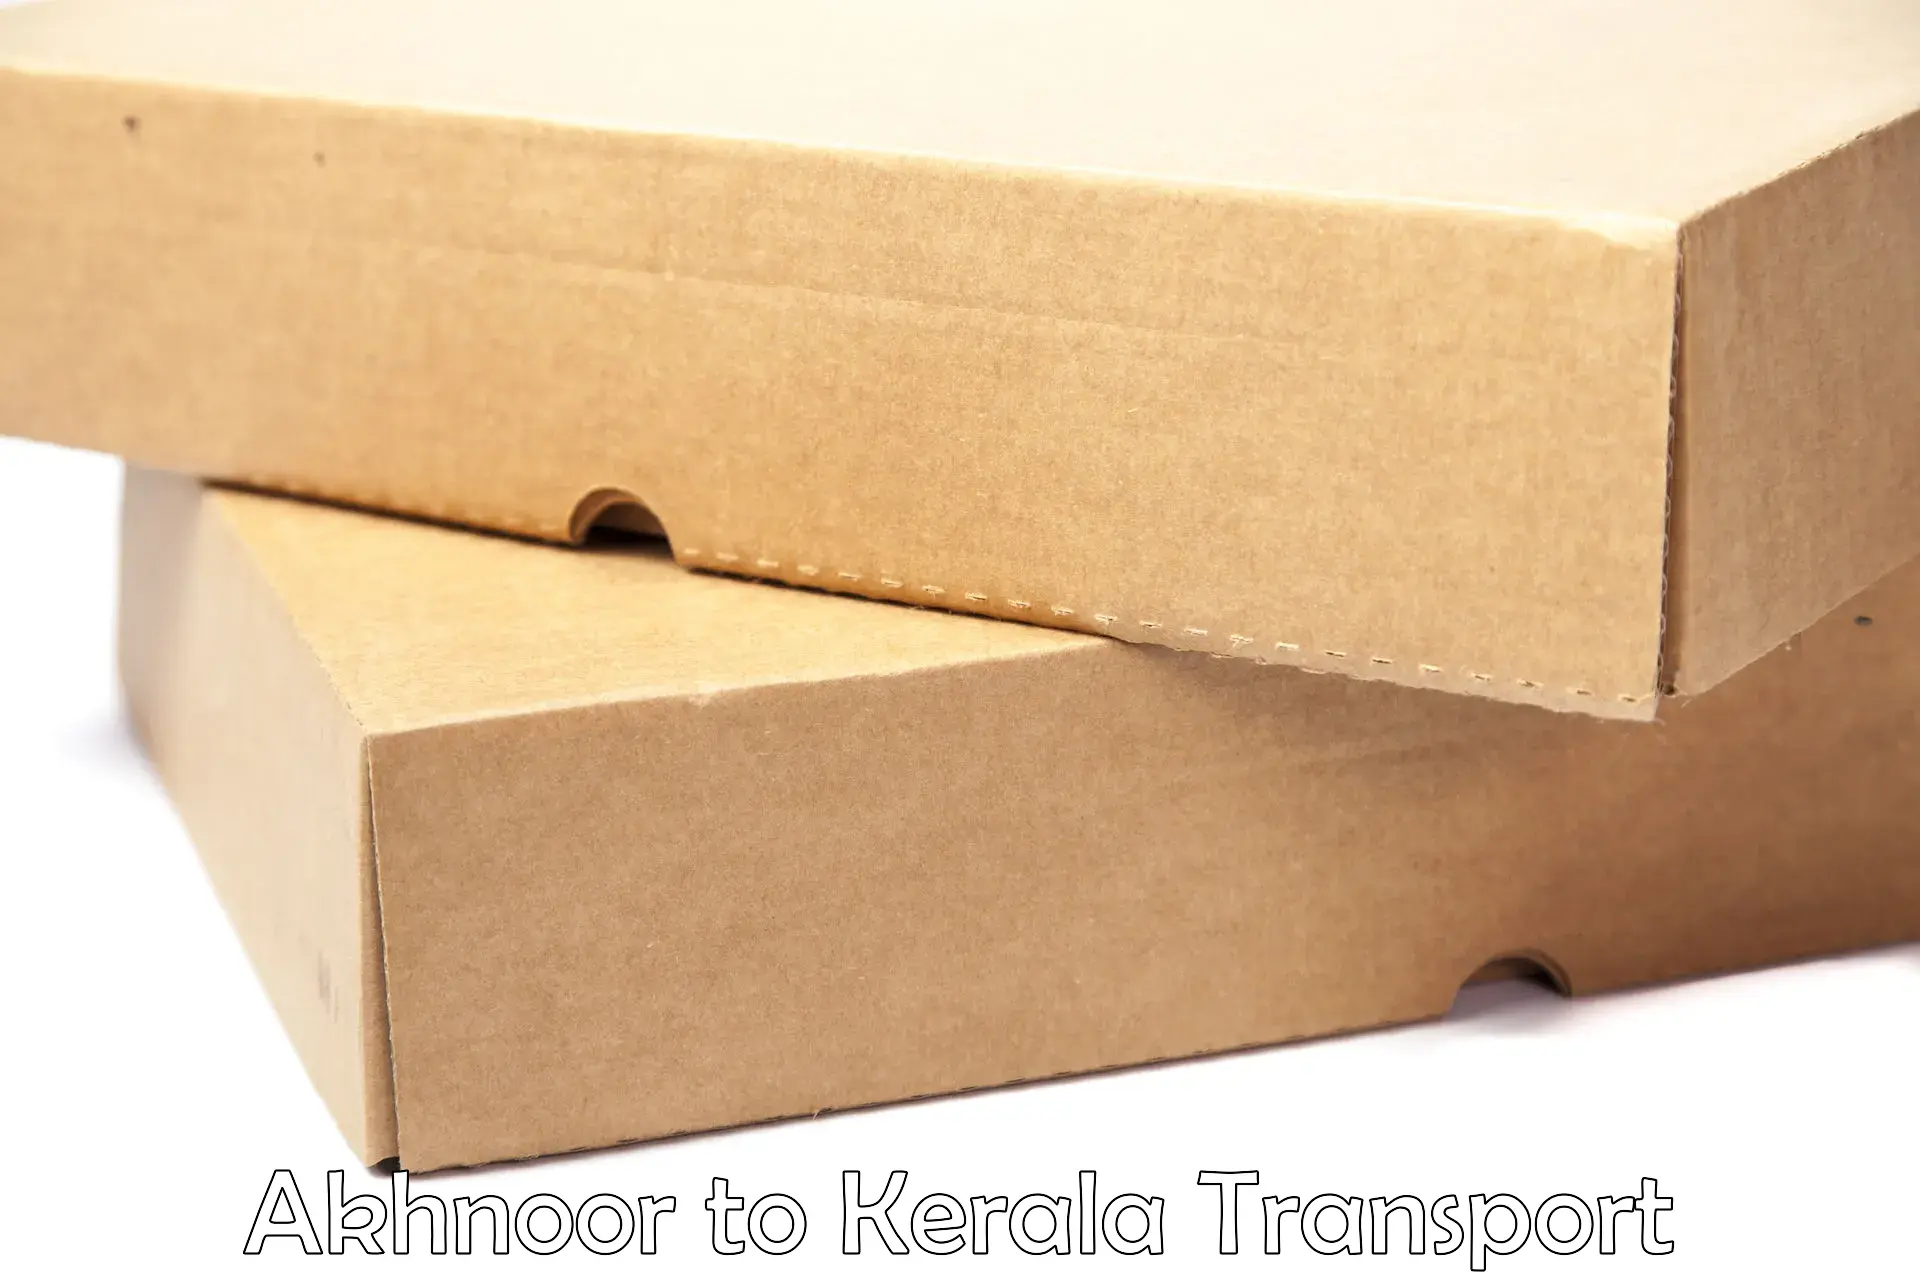 International cargo transportation services Akhnoor to Cochin Port Kochi